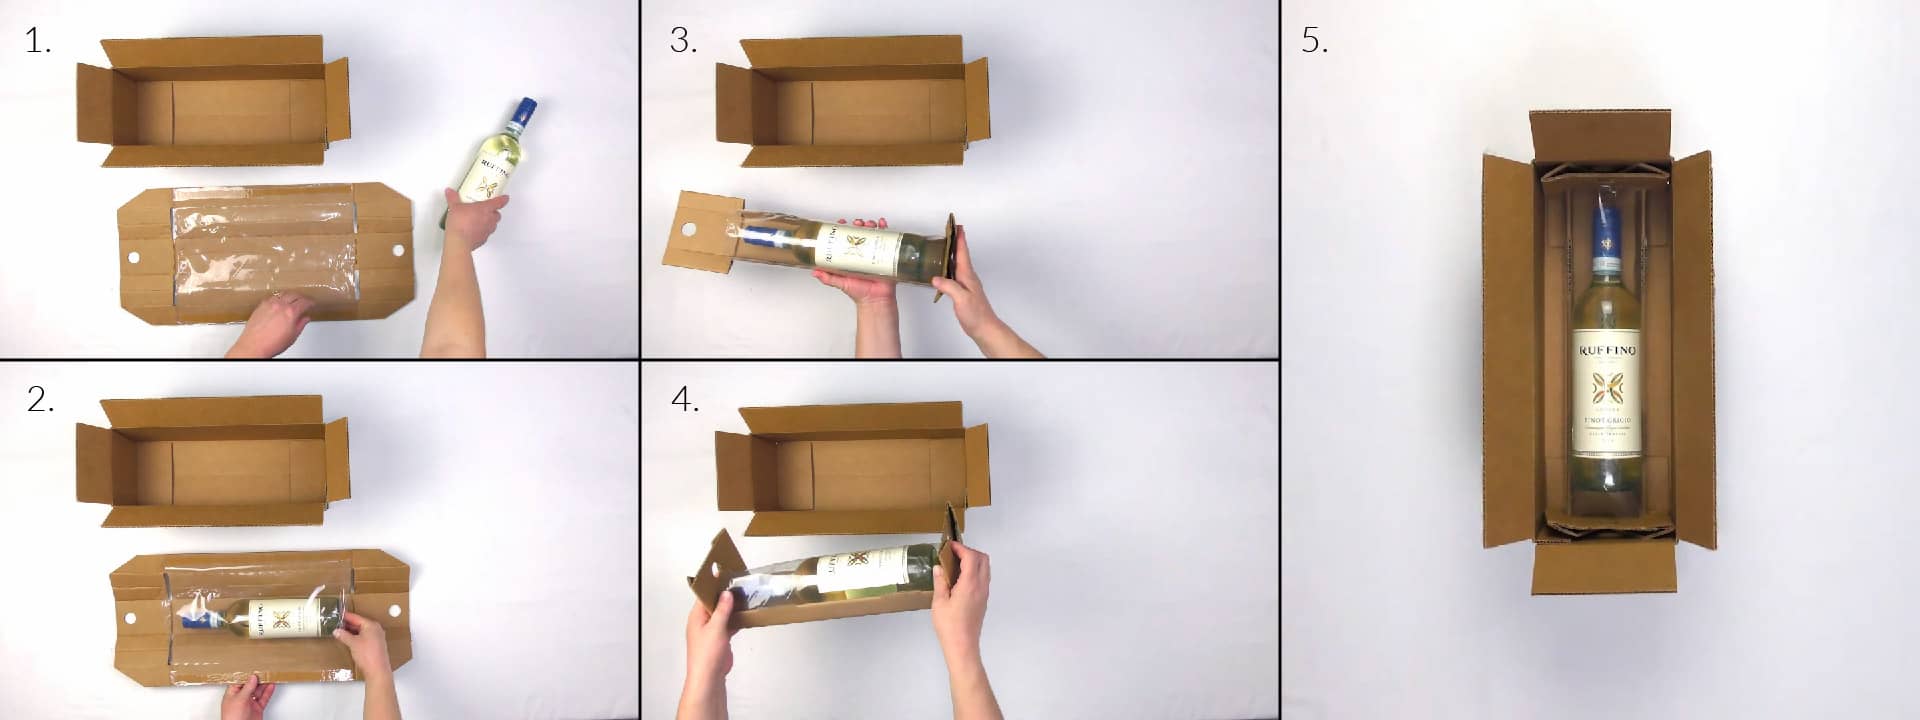 wine bottle in retention packaging